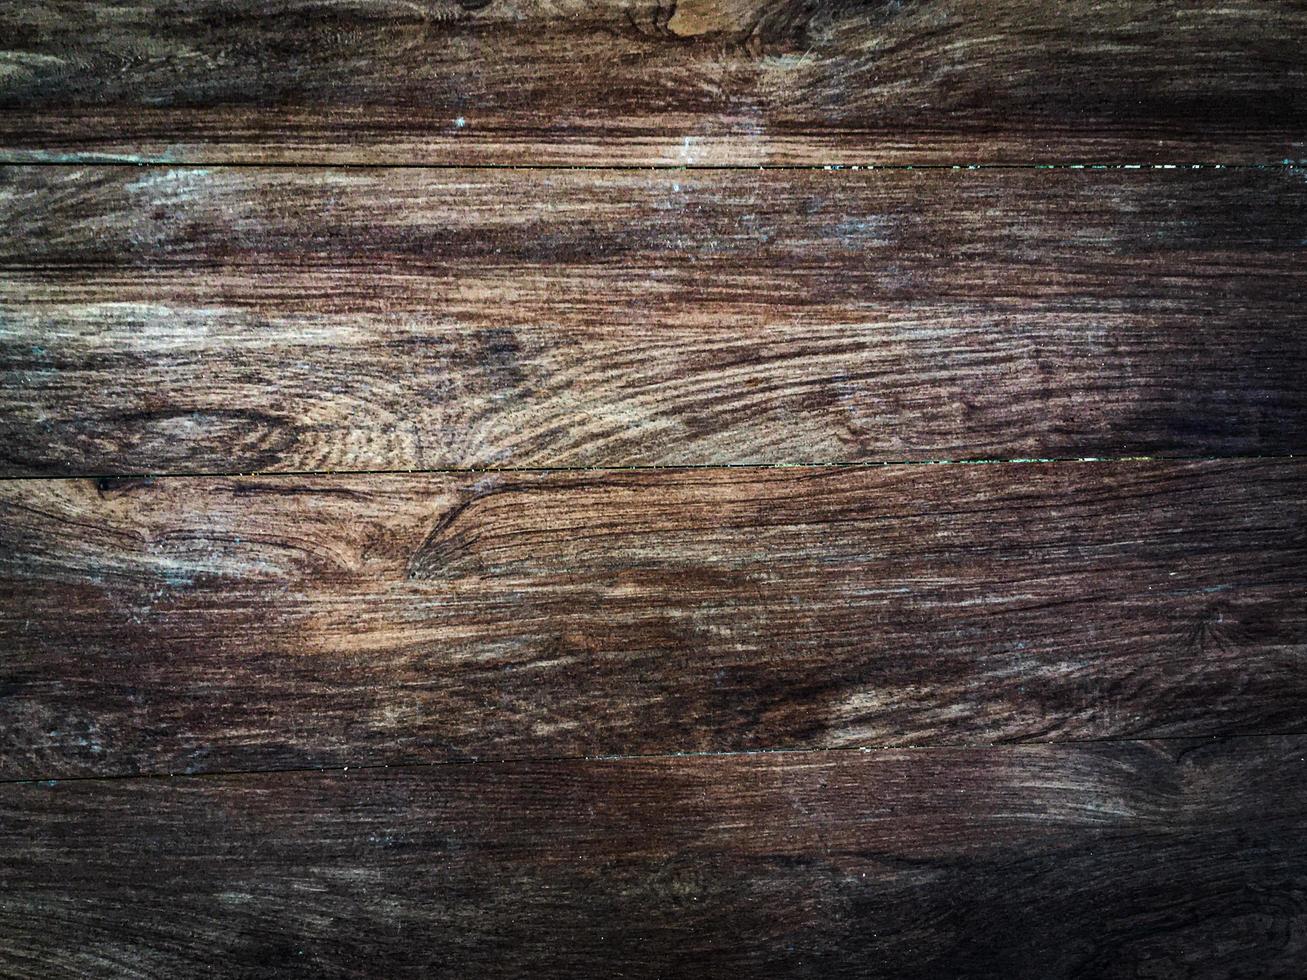 texture de planche de bois pour le fond de décoration. photo